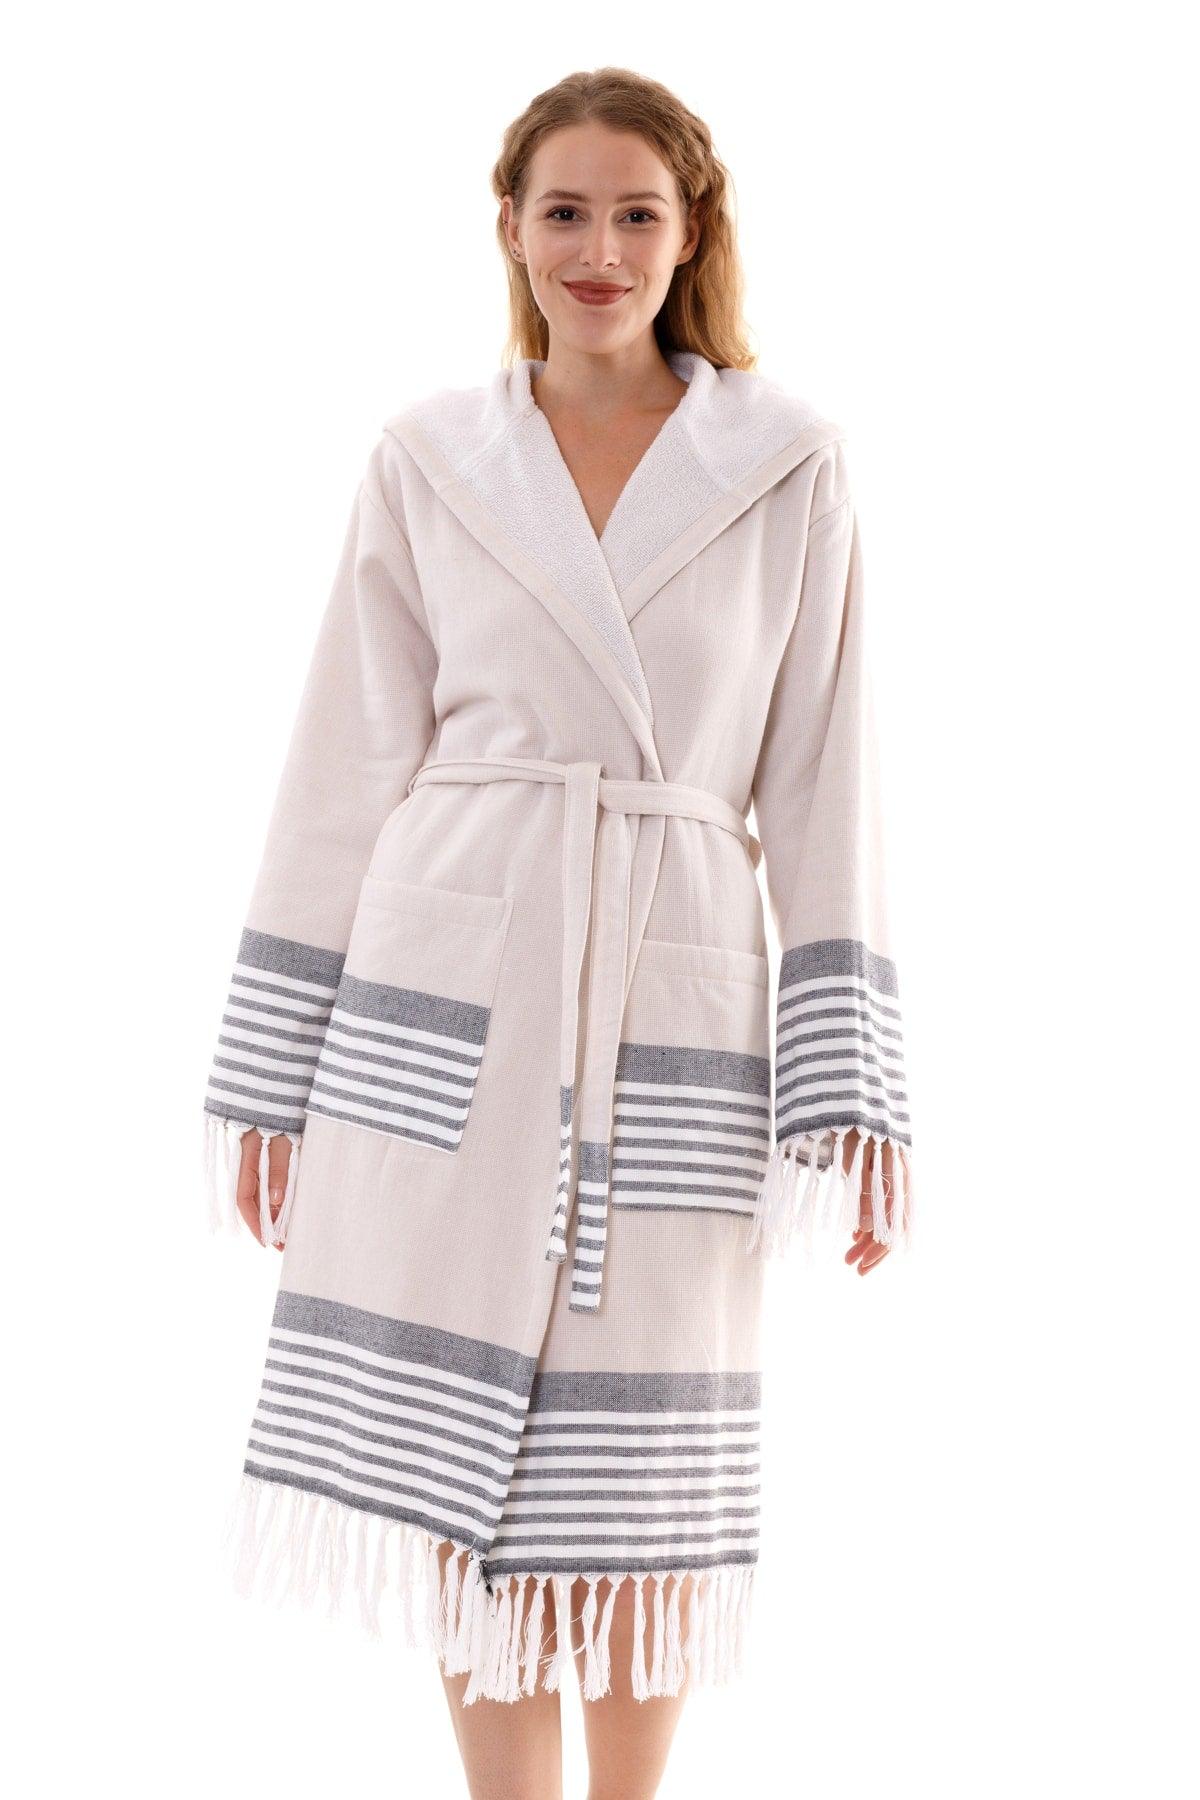 Set of 2 Large Size Bathrobes | Hooded Bathrobe &cotton Bath Towel Loincloth | Unisex (2xl-3xl-4xl) - Swordslife